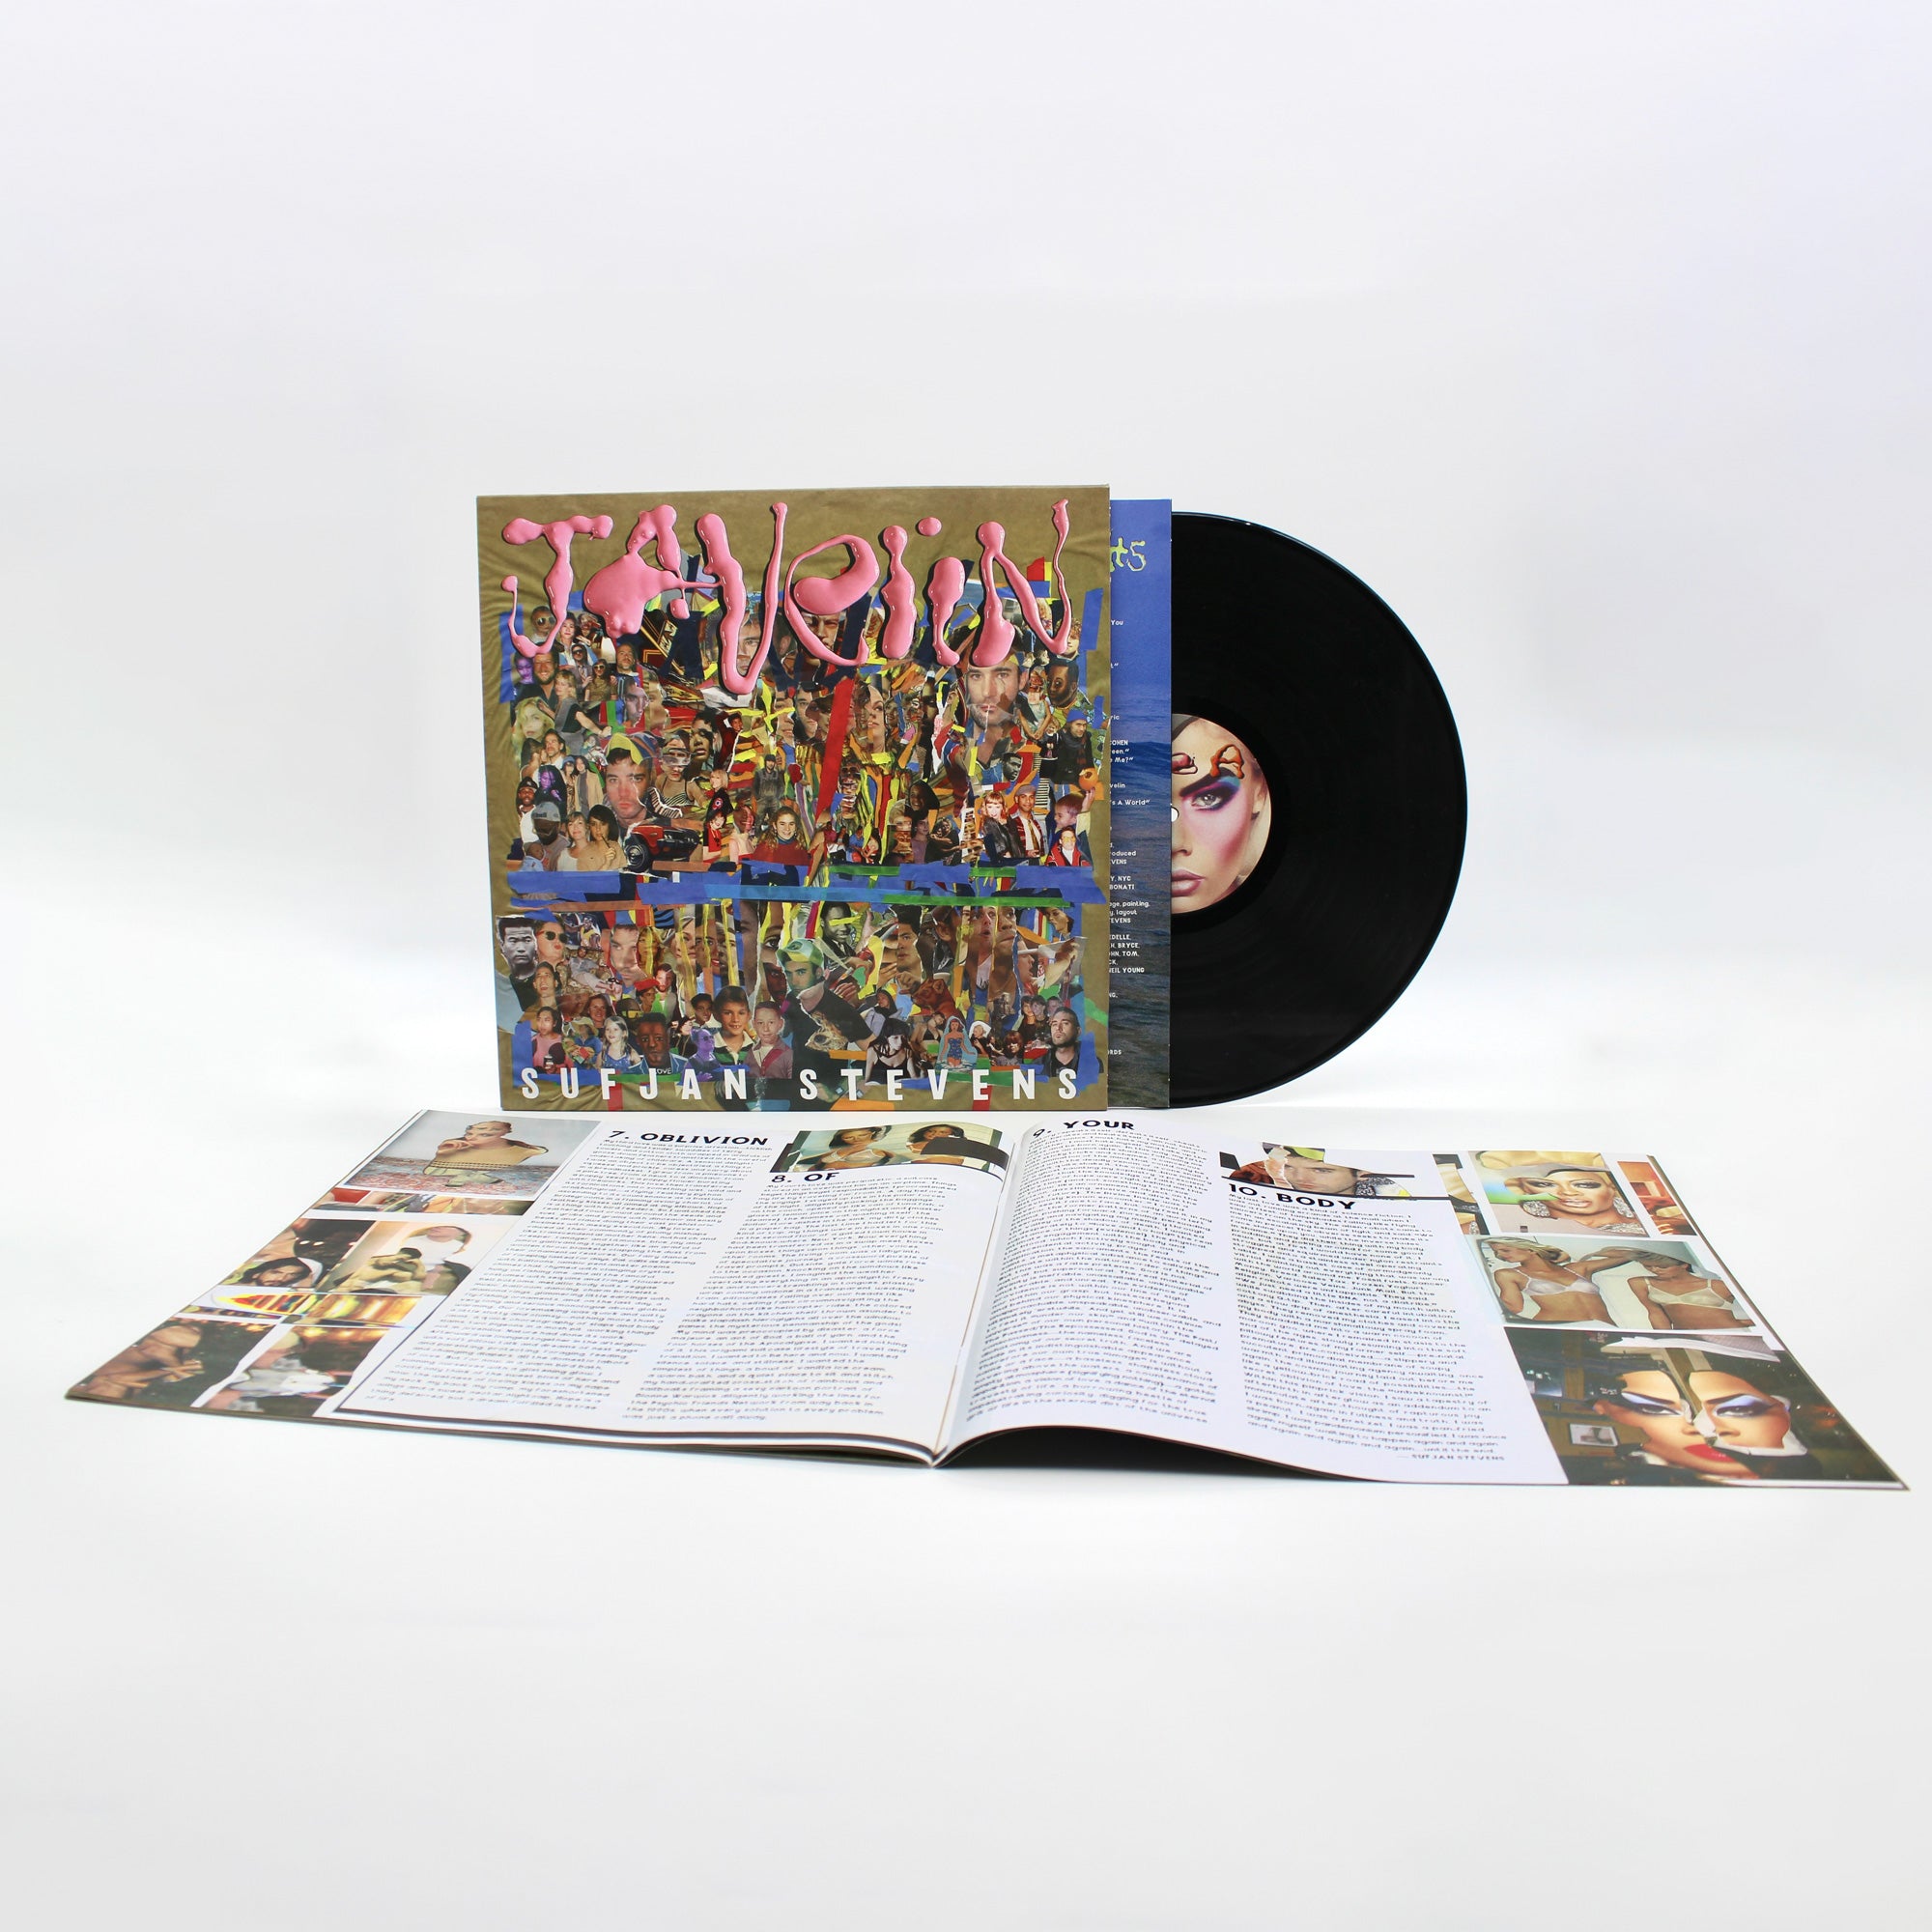 Sufjan Stevens - Javelin: Vinyl LP